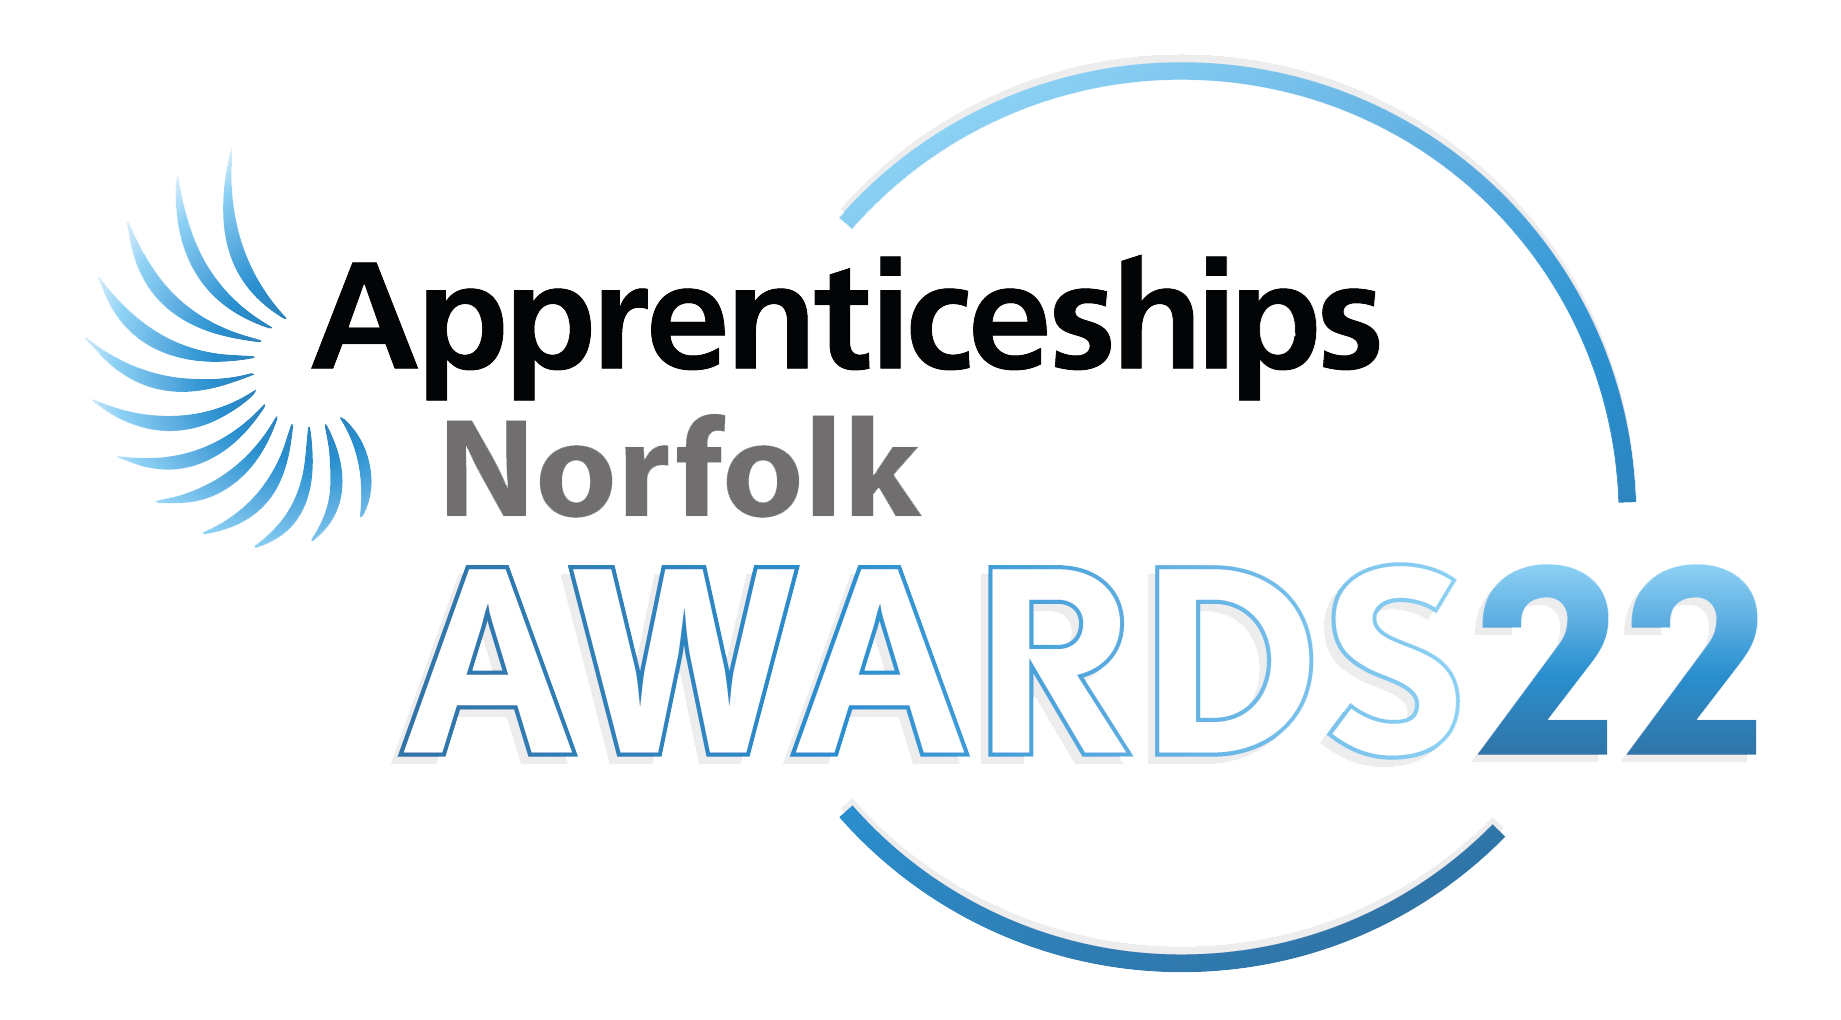 Apprenticeships Award logo